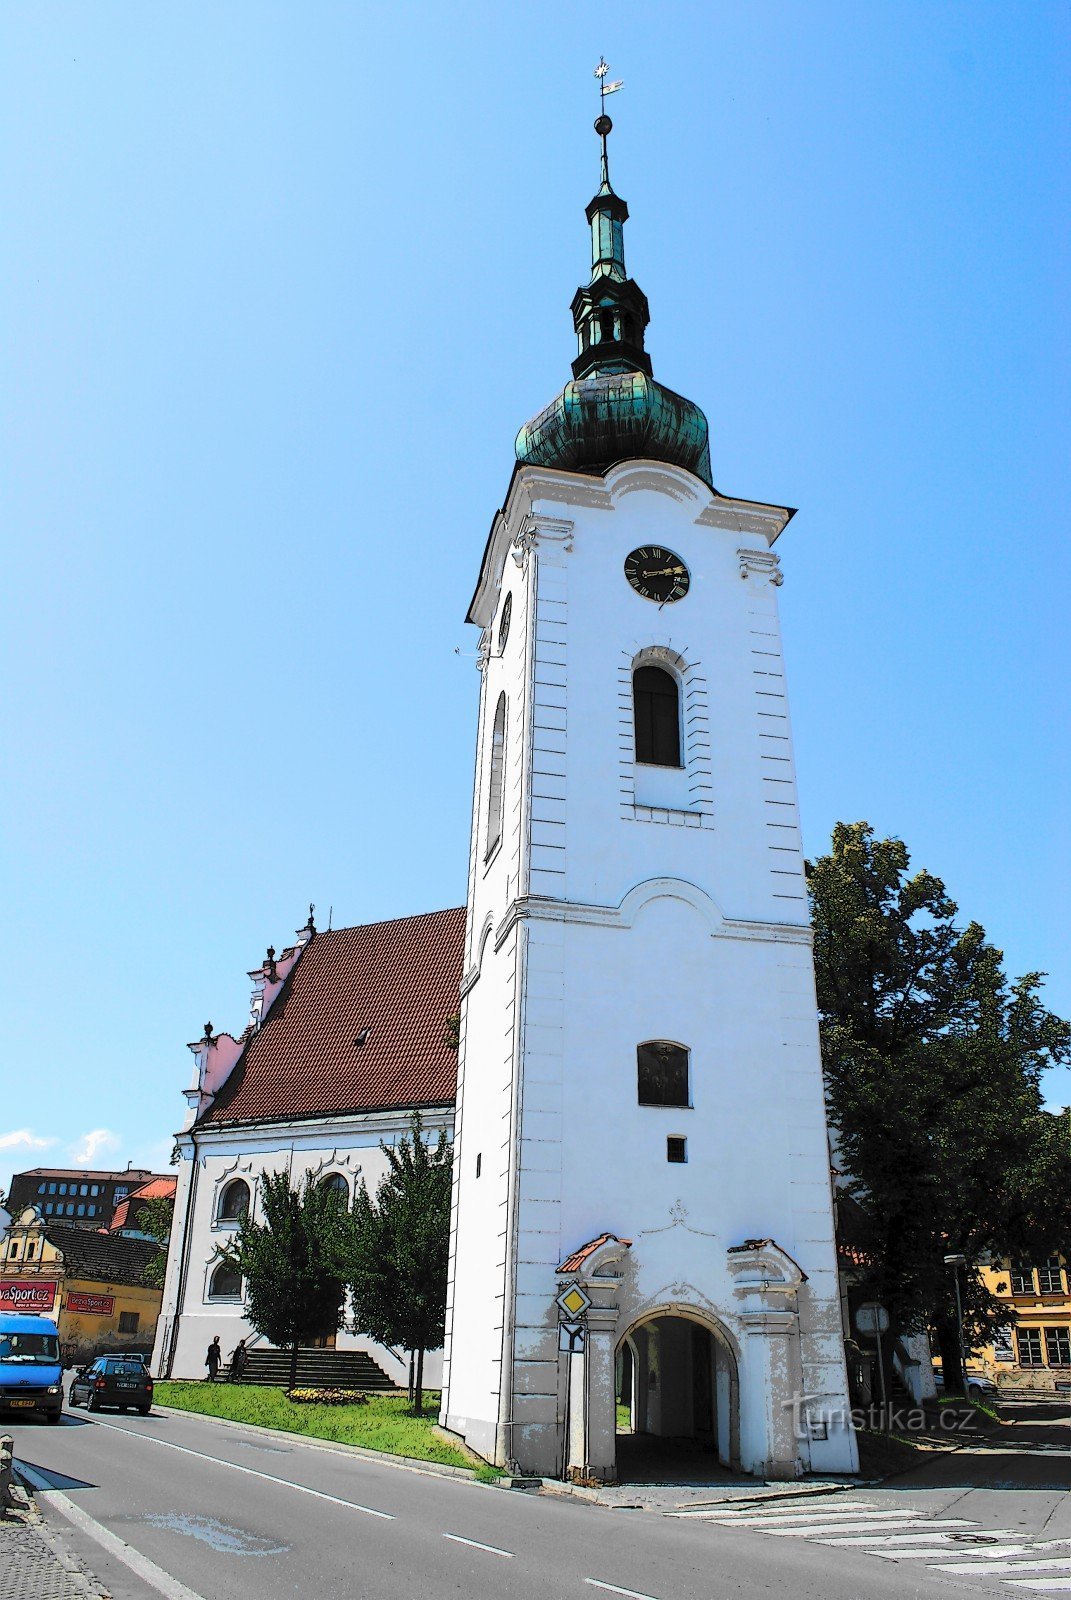 Pelhřimov - kerk van St. Welkom met belletje rinkelen